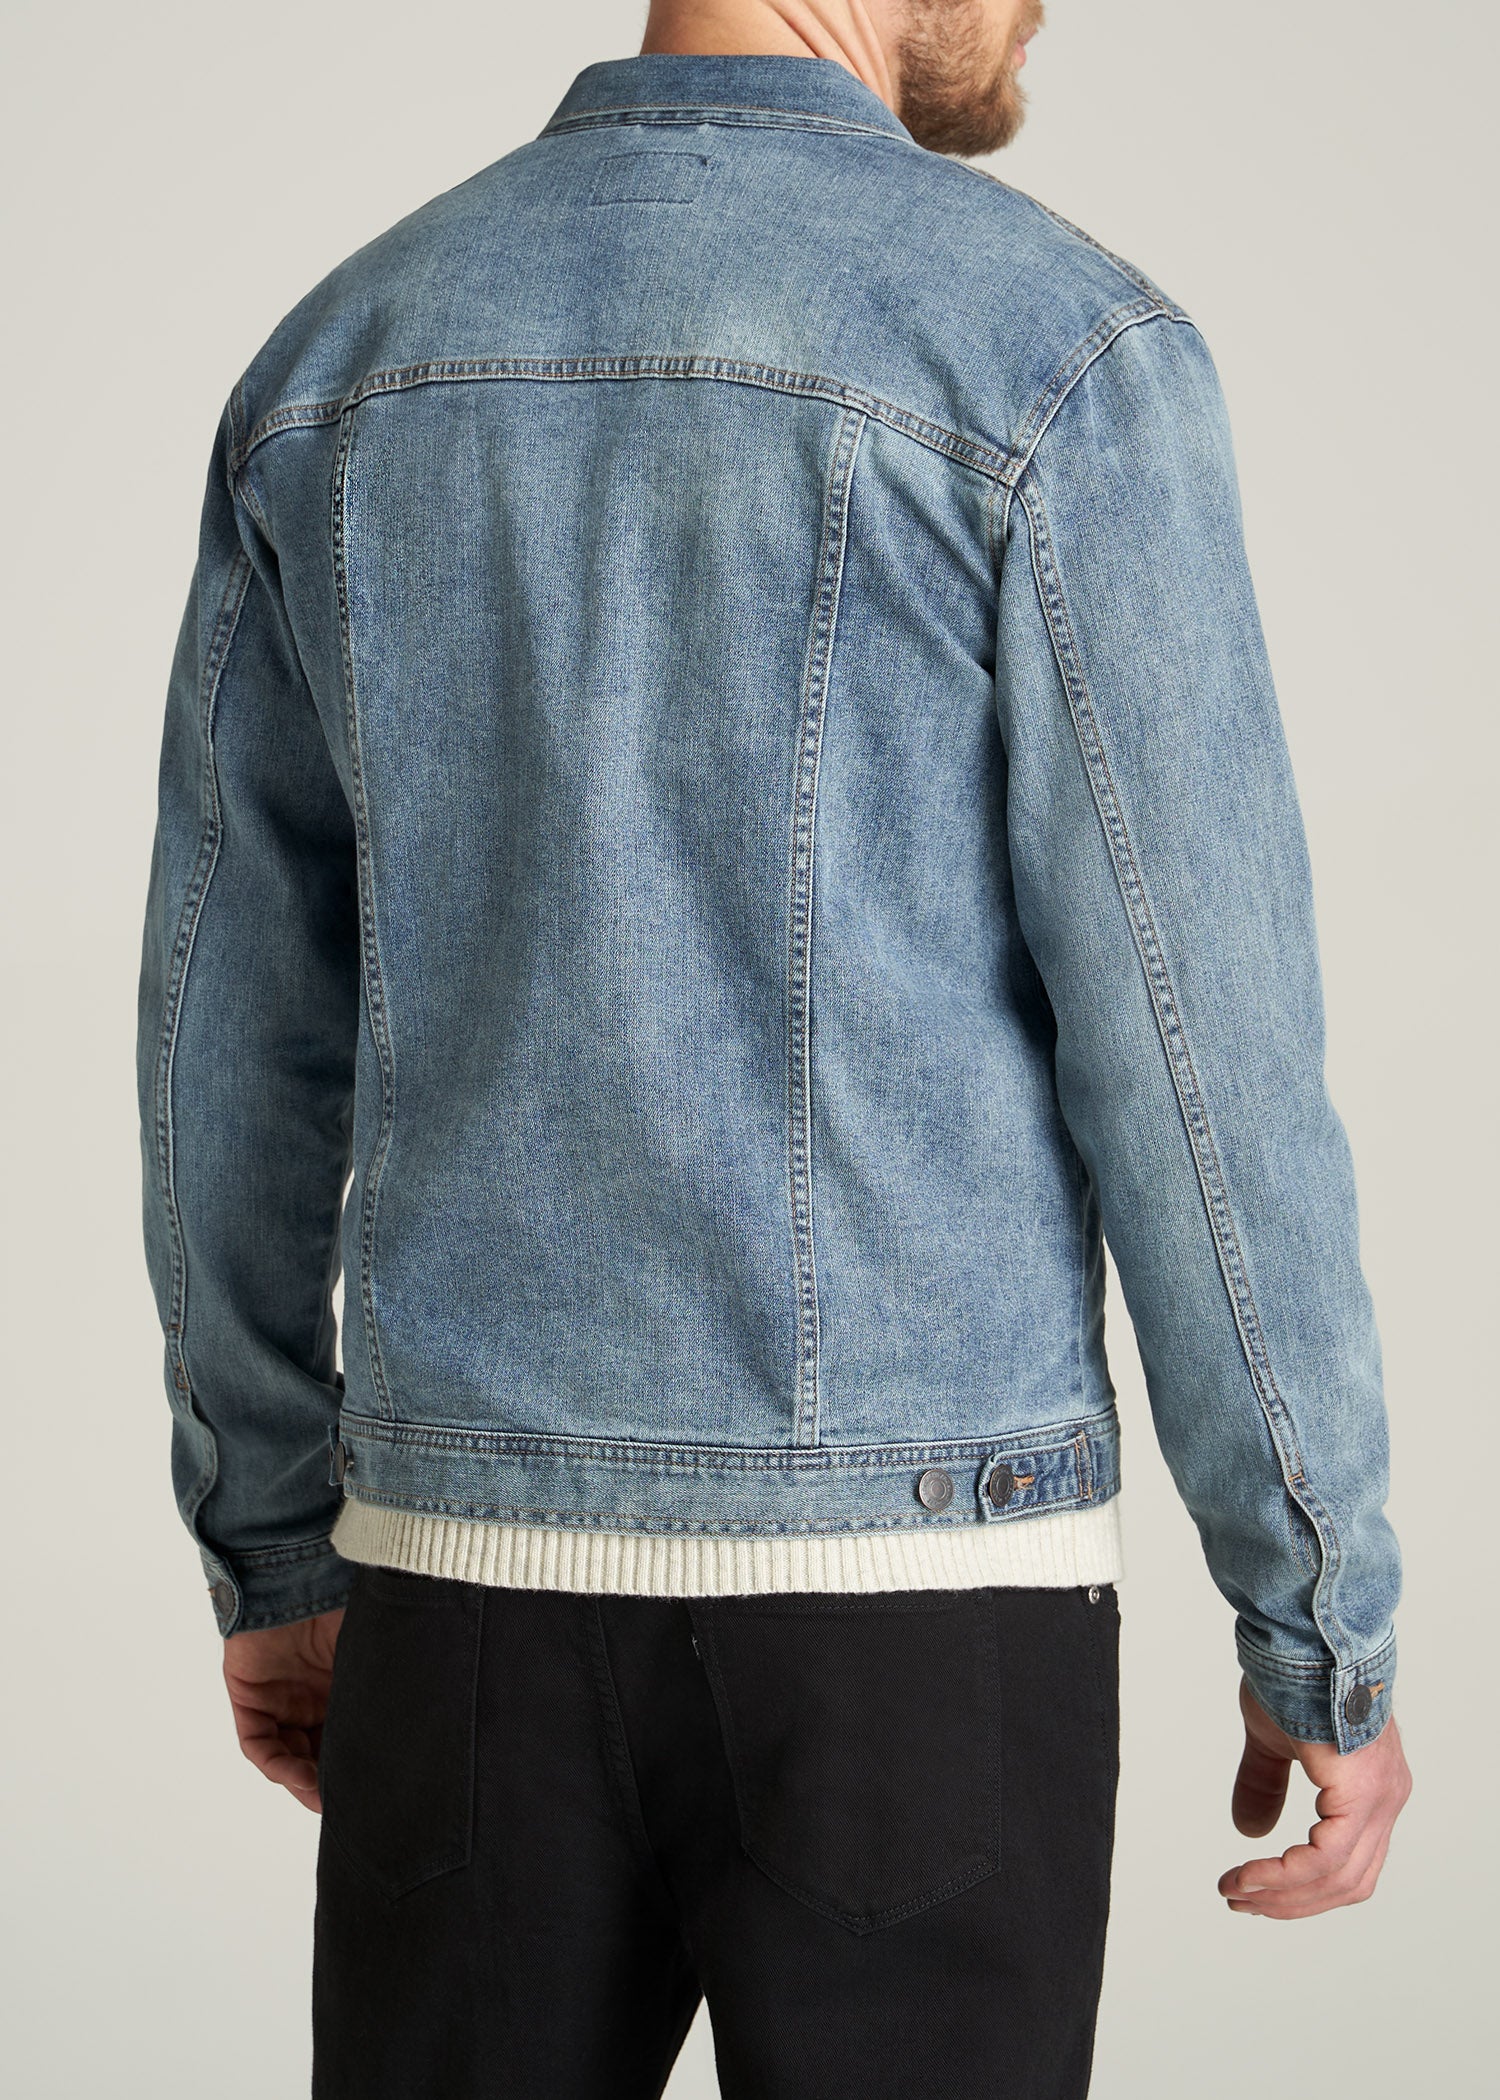 Buy Khaki Jackets & Coats for Men by SPYKAR Online | Ajio.com